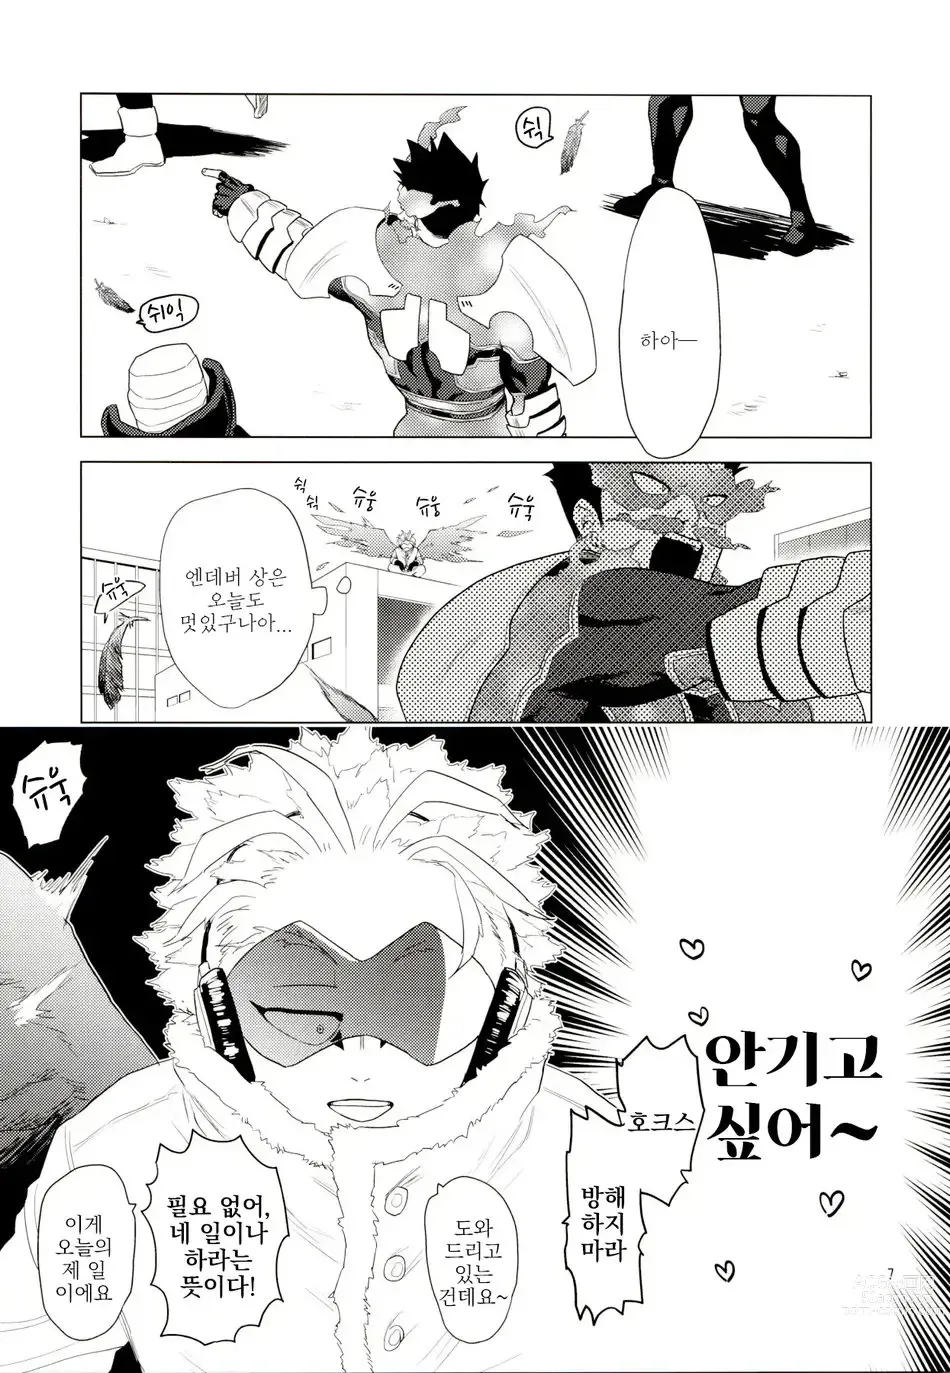 Page 6 of doujinshi Enholog #01